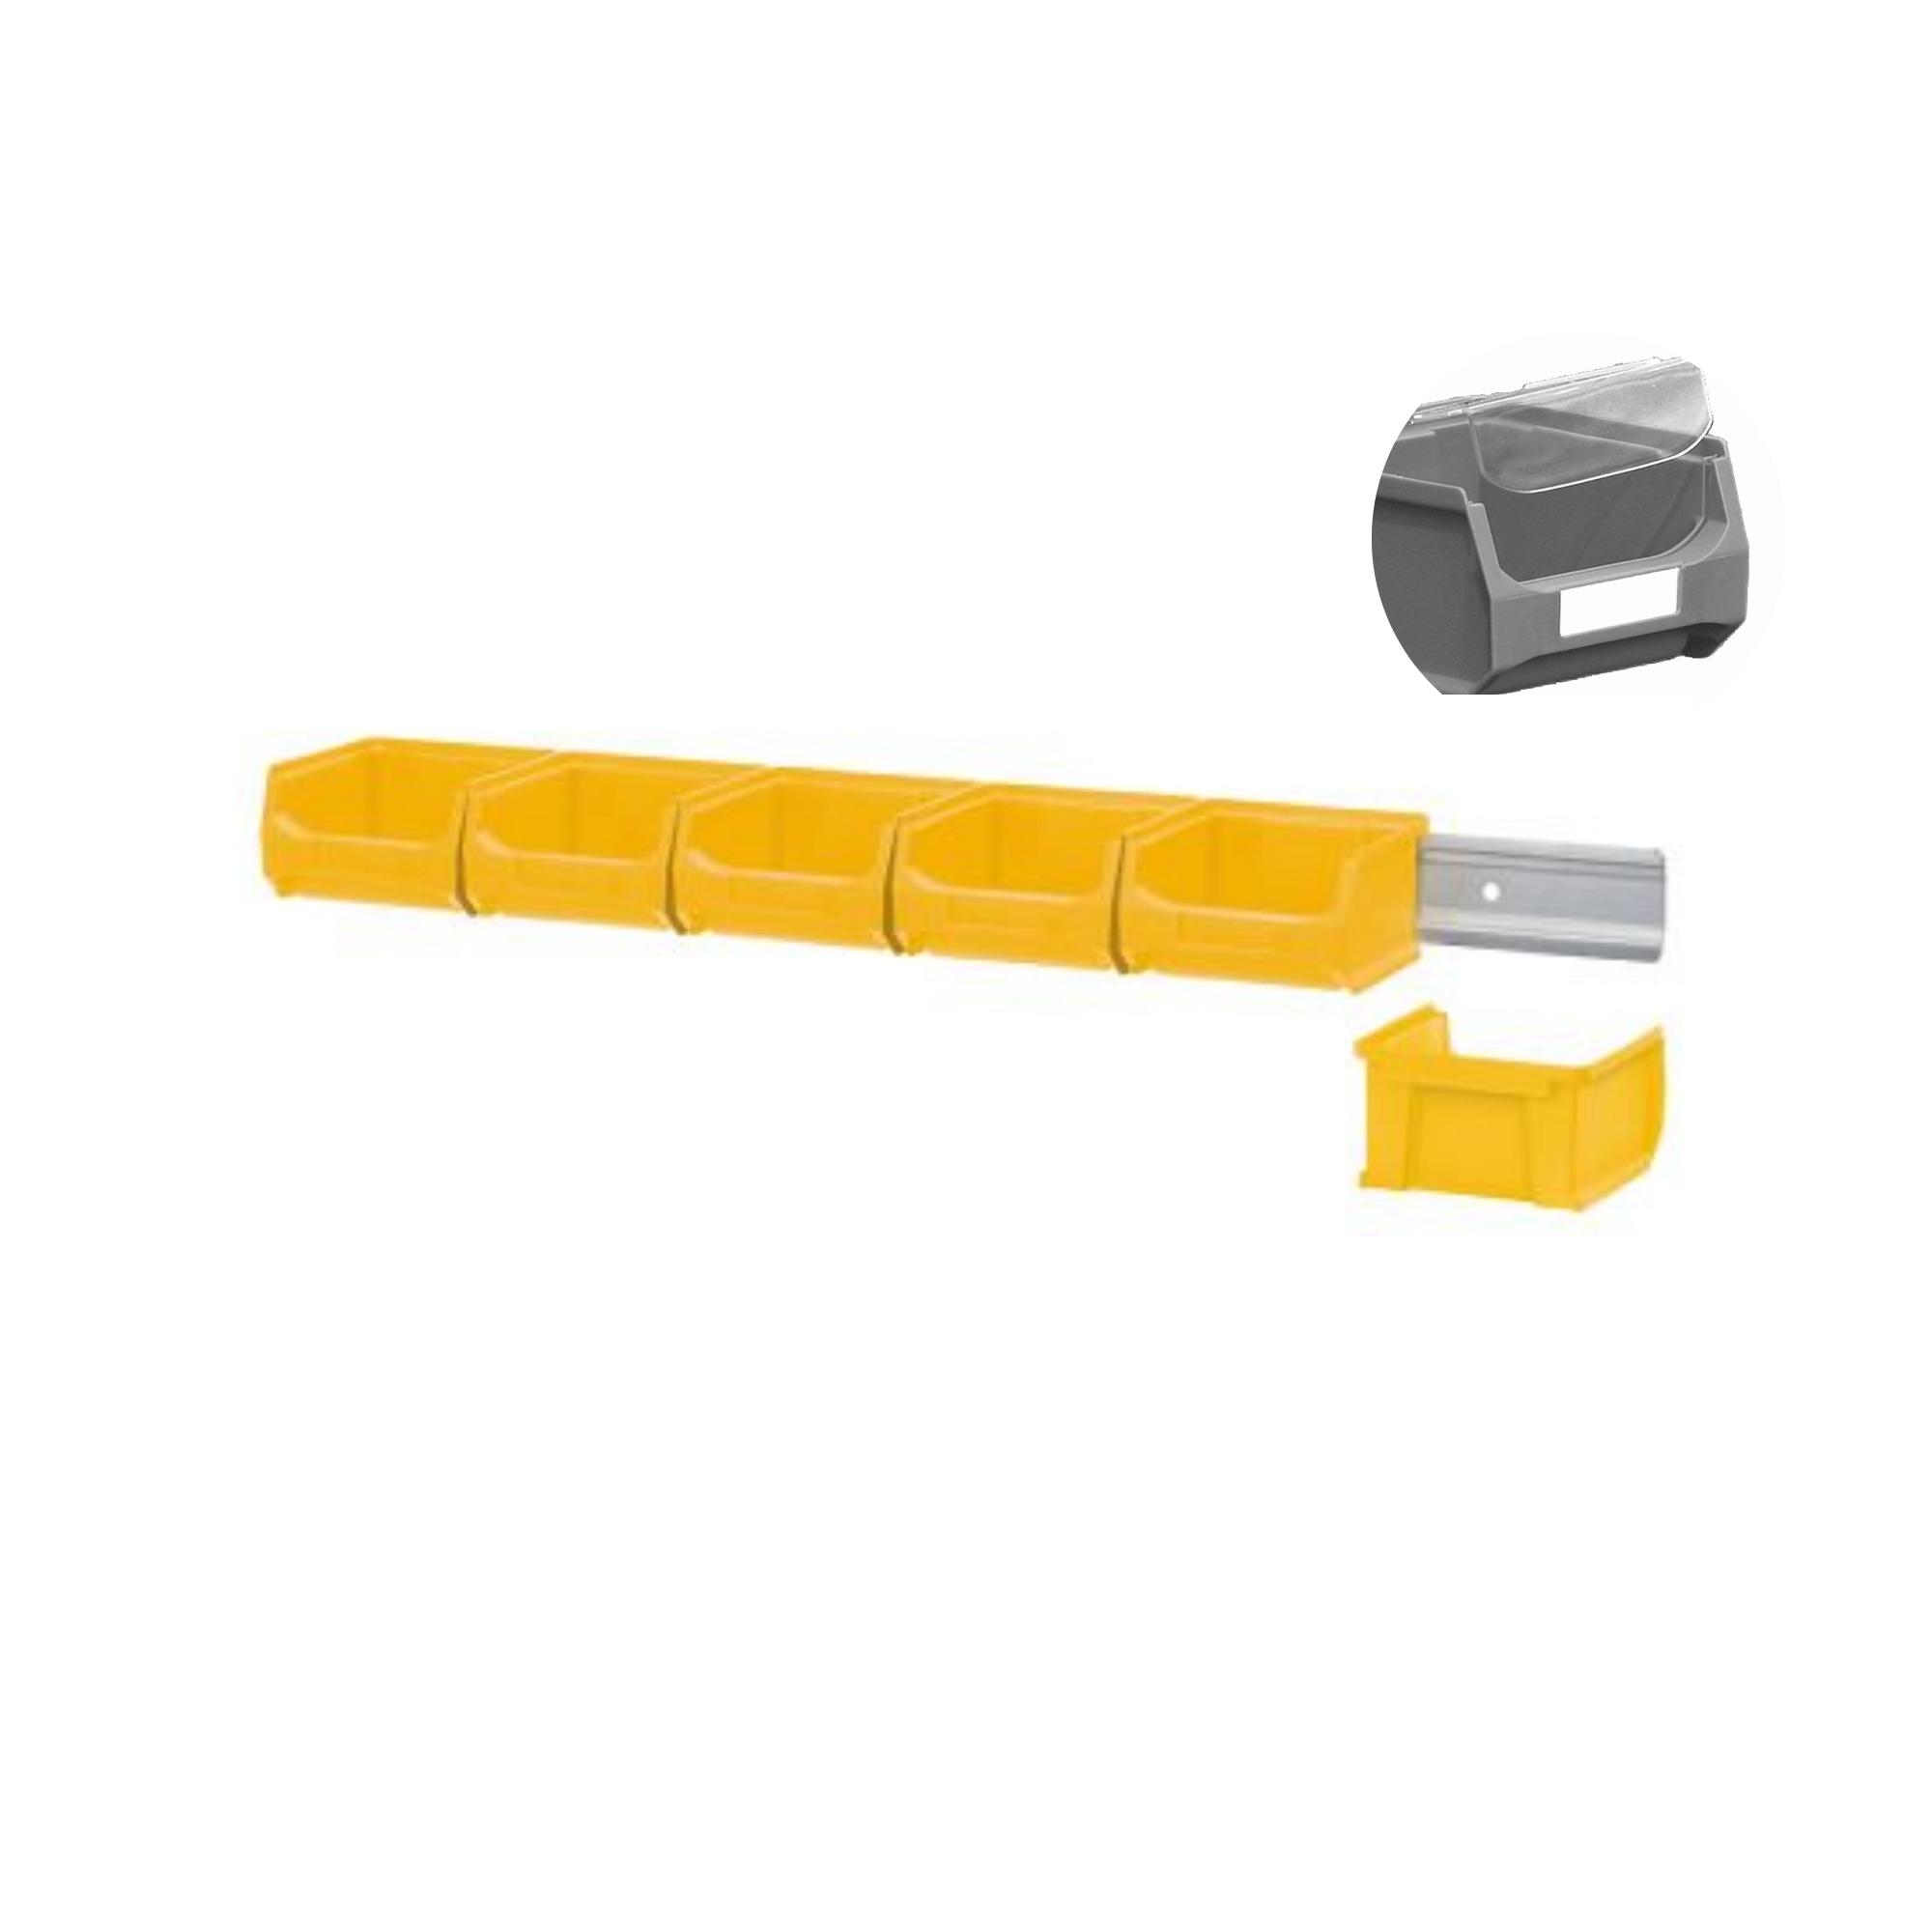 Wandleiste mit 6x Gelbe Sichtlagerbox 1.0 mit Abdeckung | HxBxT 6,1x60,5x10cm | Wandhalterung, Kleinteileaufbewahrung, Sortimentsboxhalterung